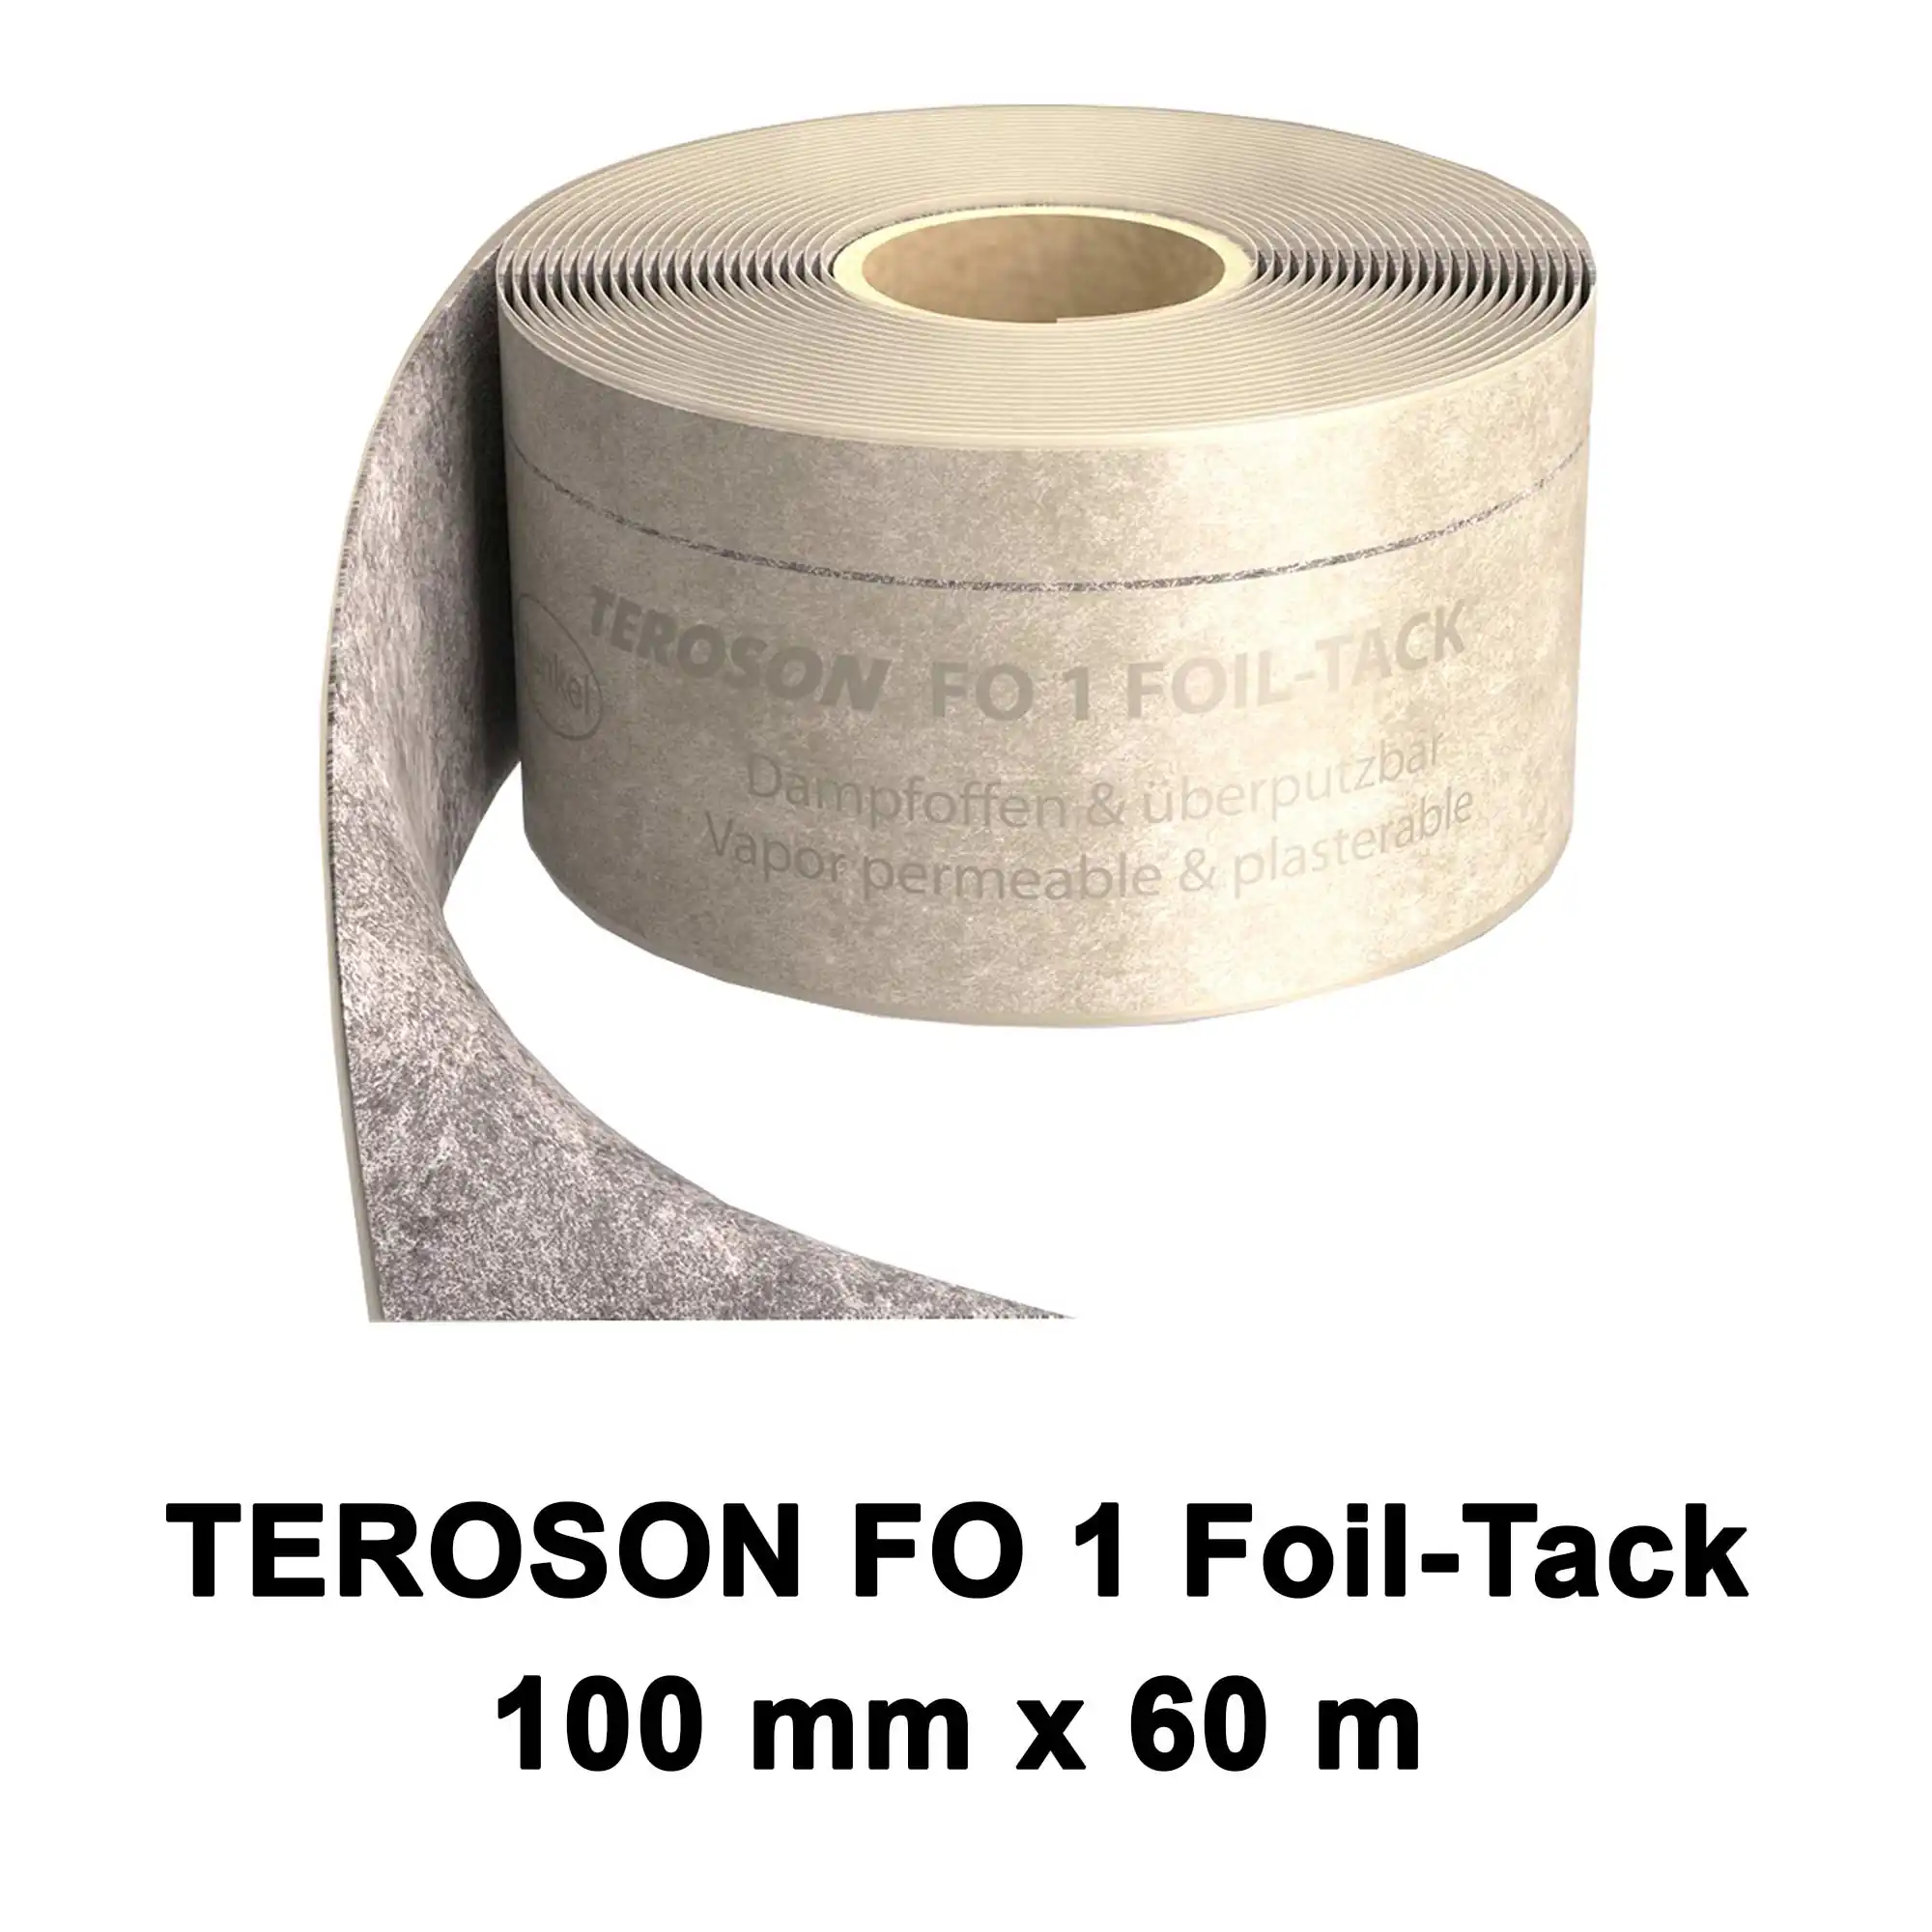 Dichtfolie TEROSON FO 1 FOIL-TACK 100 mm x 60 m